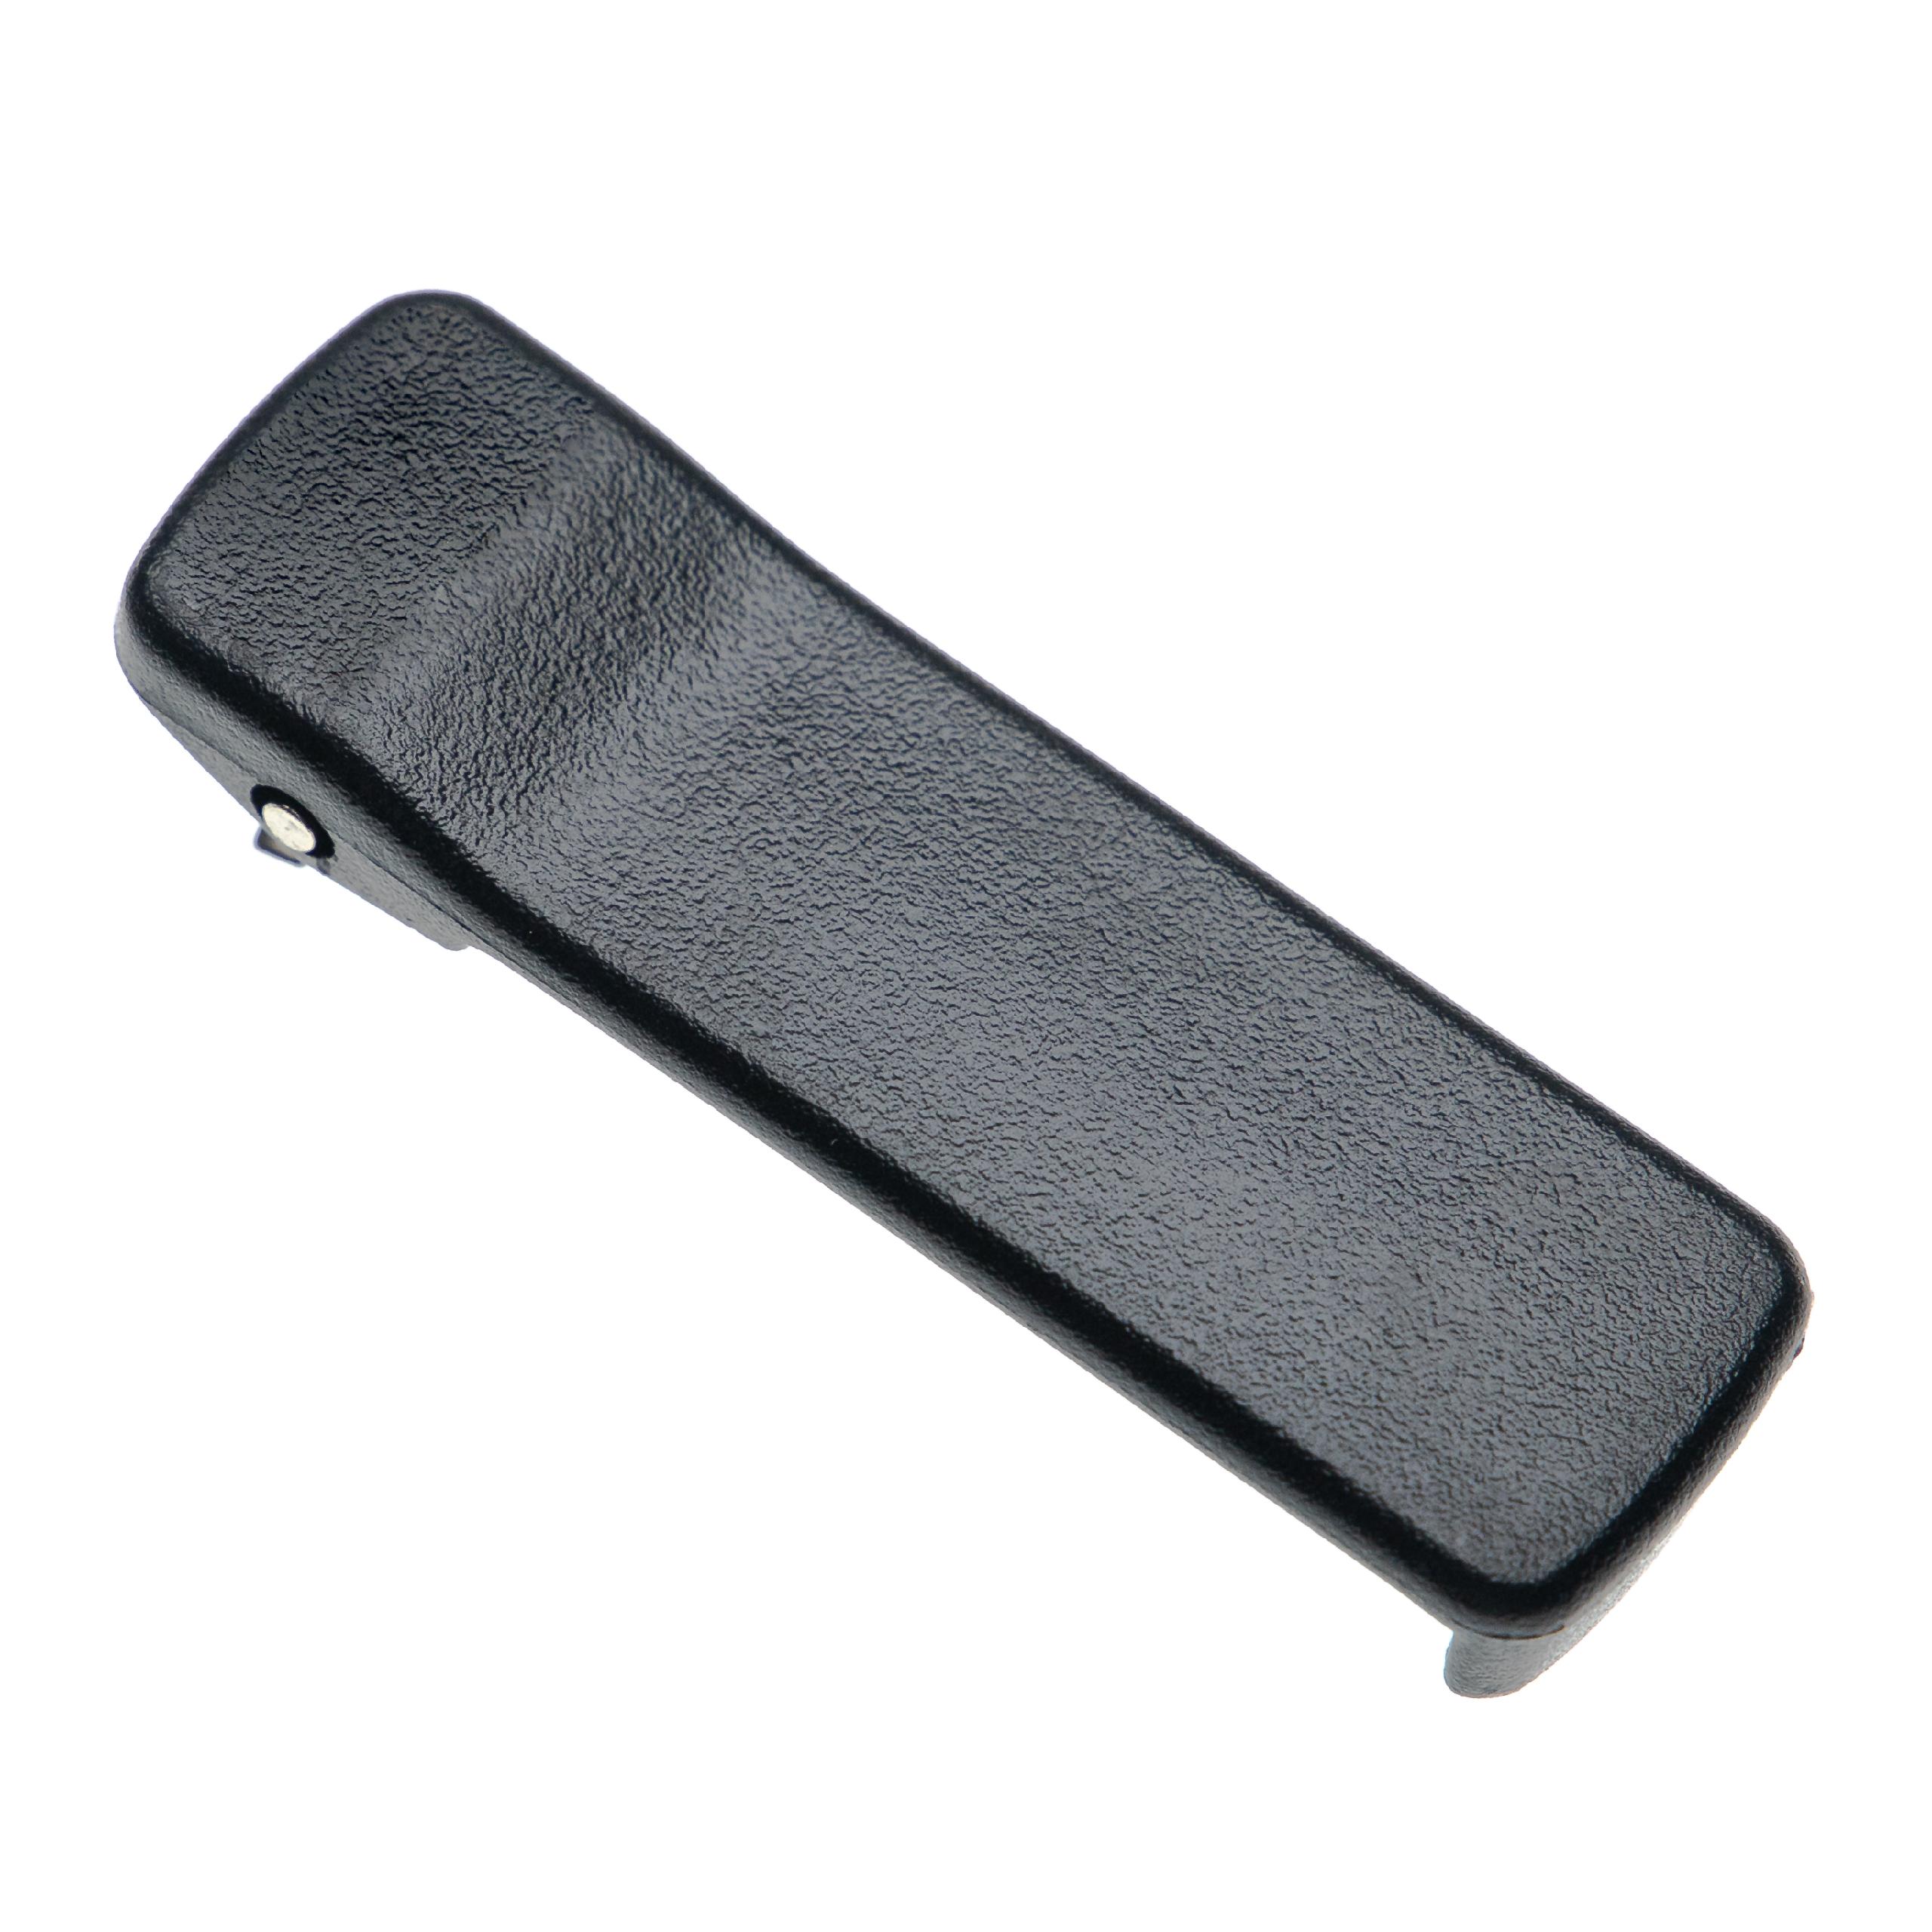 Clip para cinturón para equipos de radio Motorola GP900 - plástico, negro